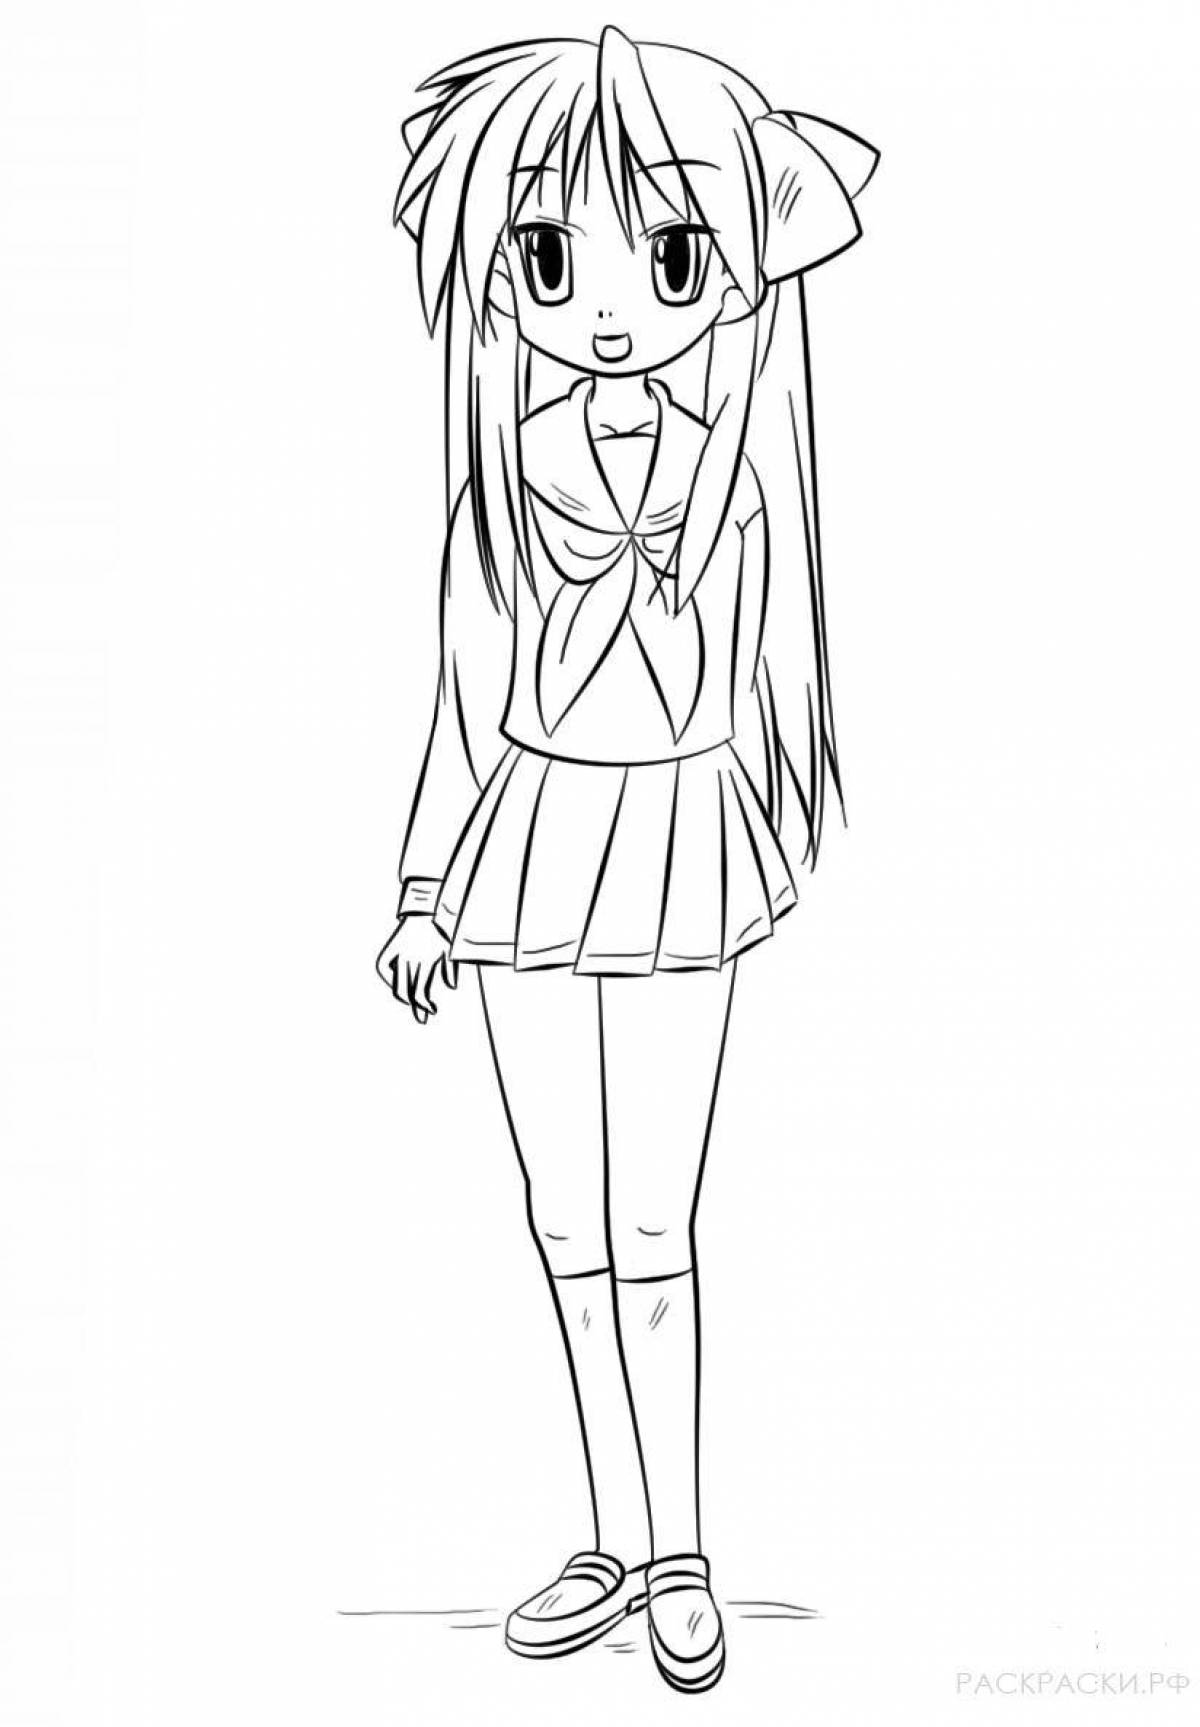 Full length anime girl coloring book